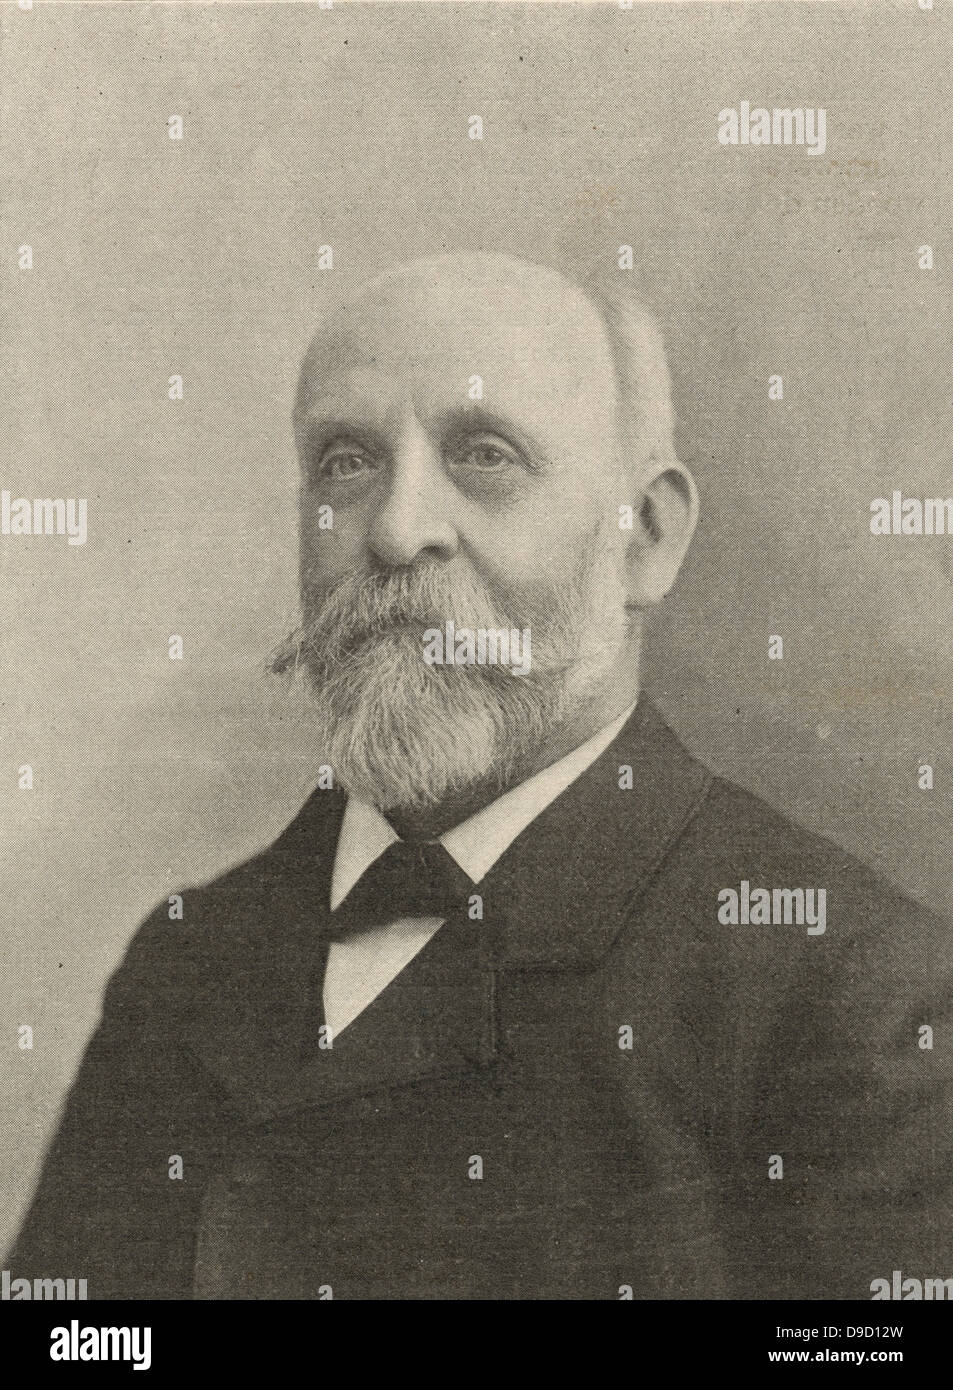 Alwan Graham Clark 1832-1897), US-amerikanischer Astronom und Teleskop Teekocher, Sohn von alwan Clark. Gründer von alwan Clark & Söhne. Teleskop und objektiv Lieferanten leding Welt Observatorien. Stockfoto